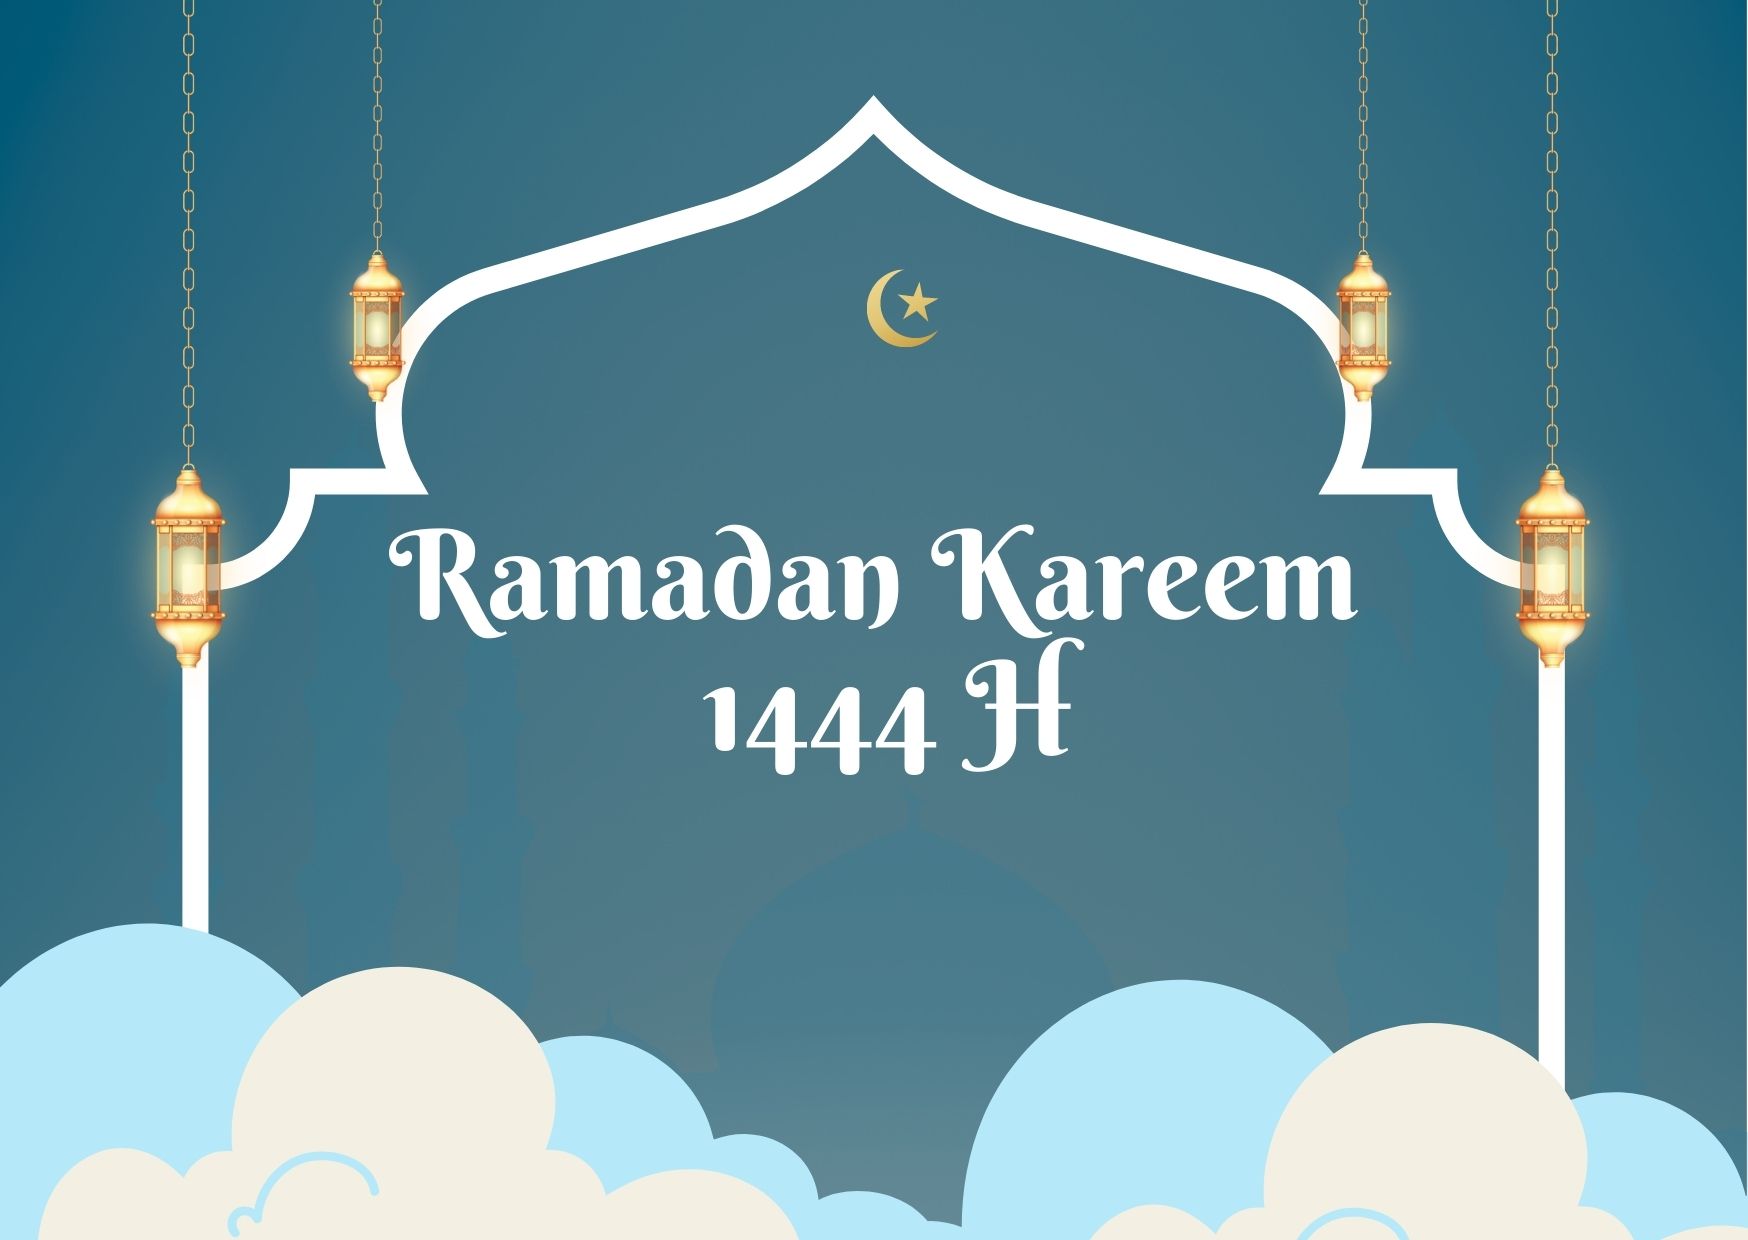 Ramadhan Kareem 1444 h